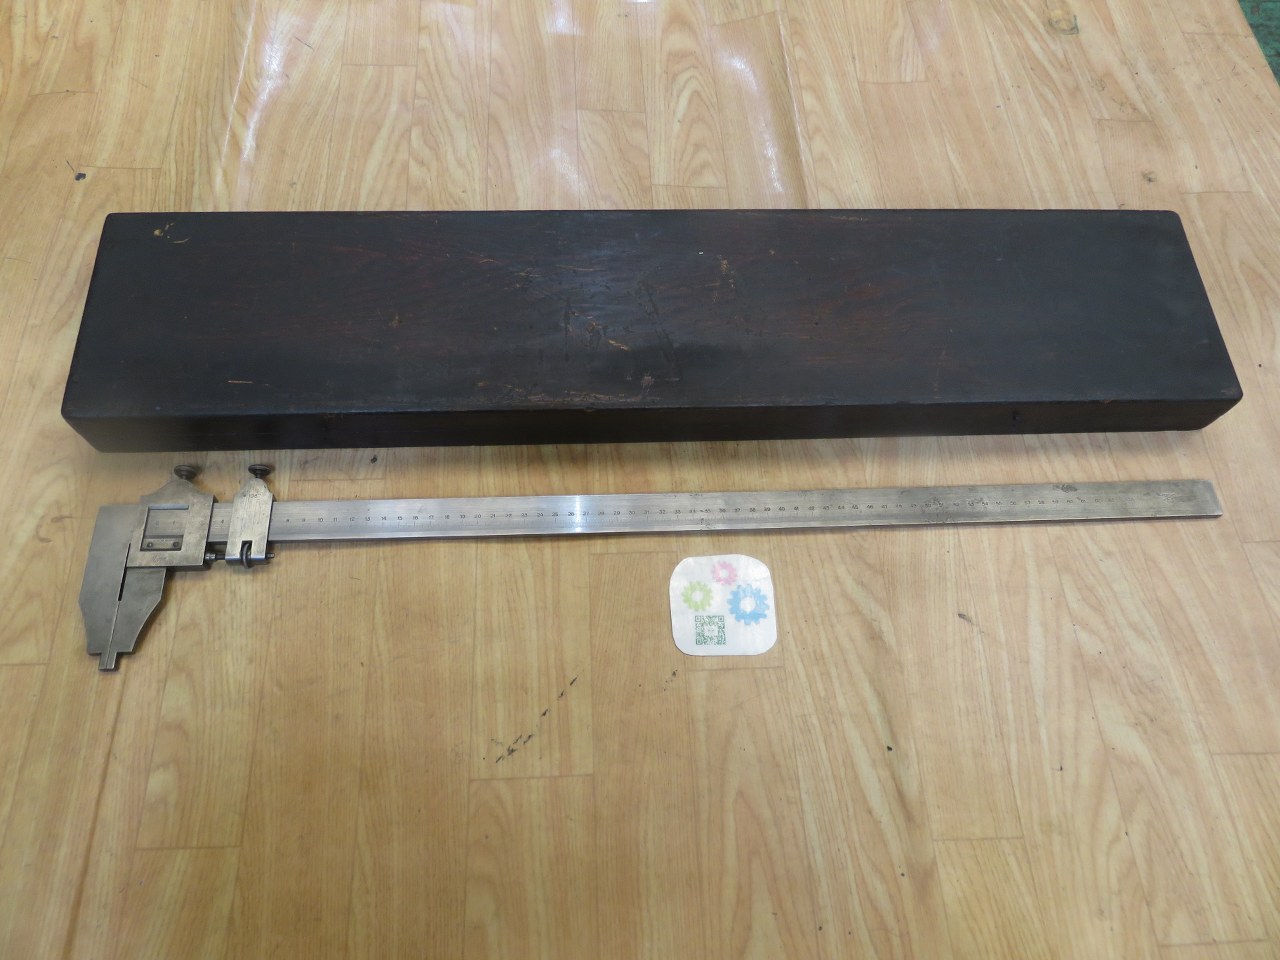 中古Vernier caliper [ノギス]測定範囲 0-60cm MITUTOYO